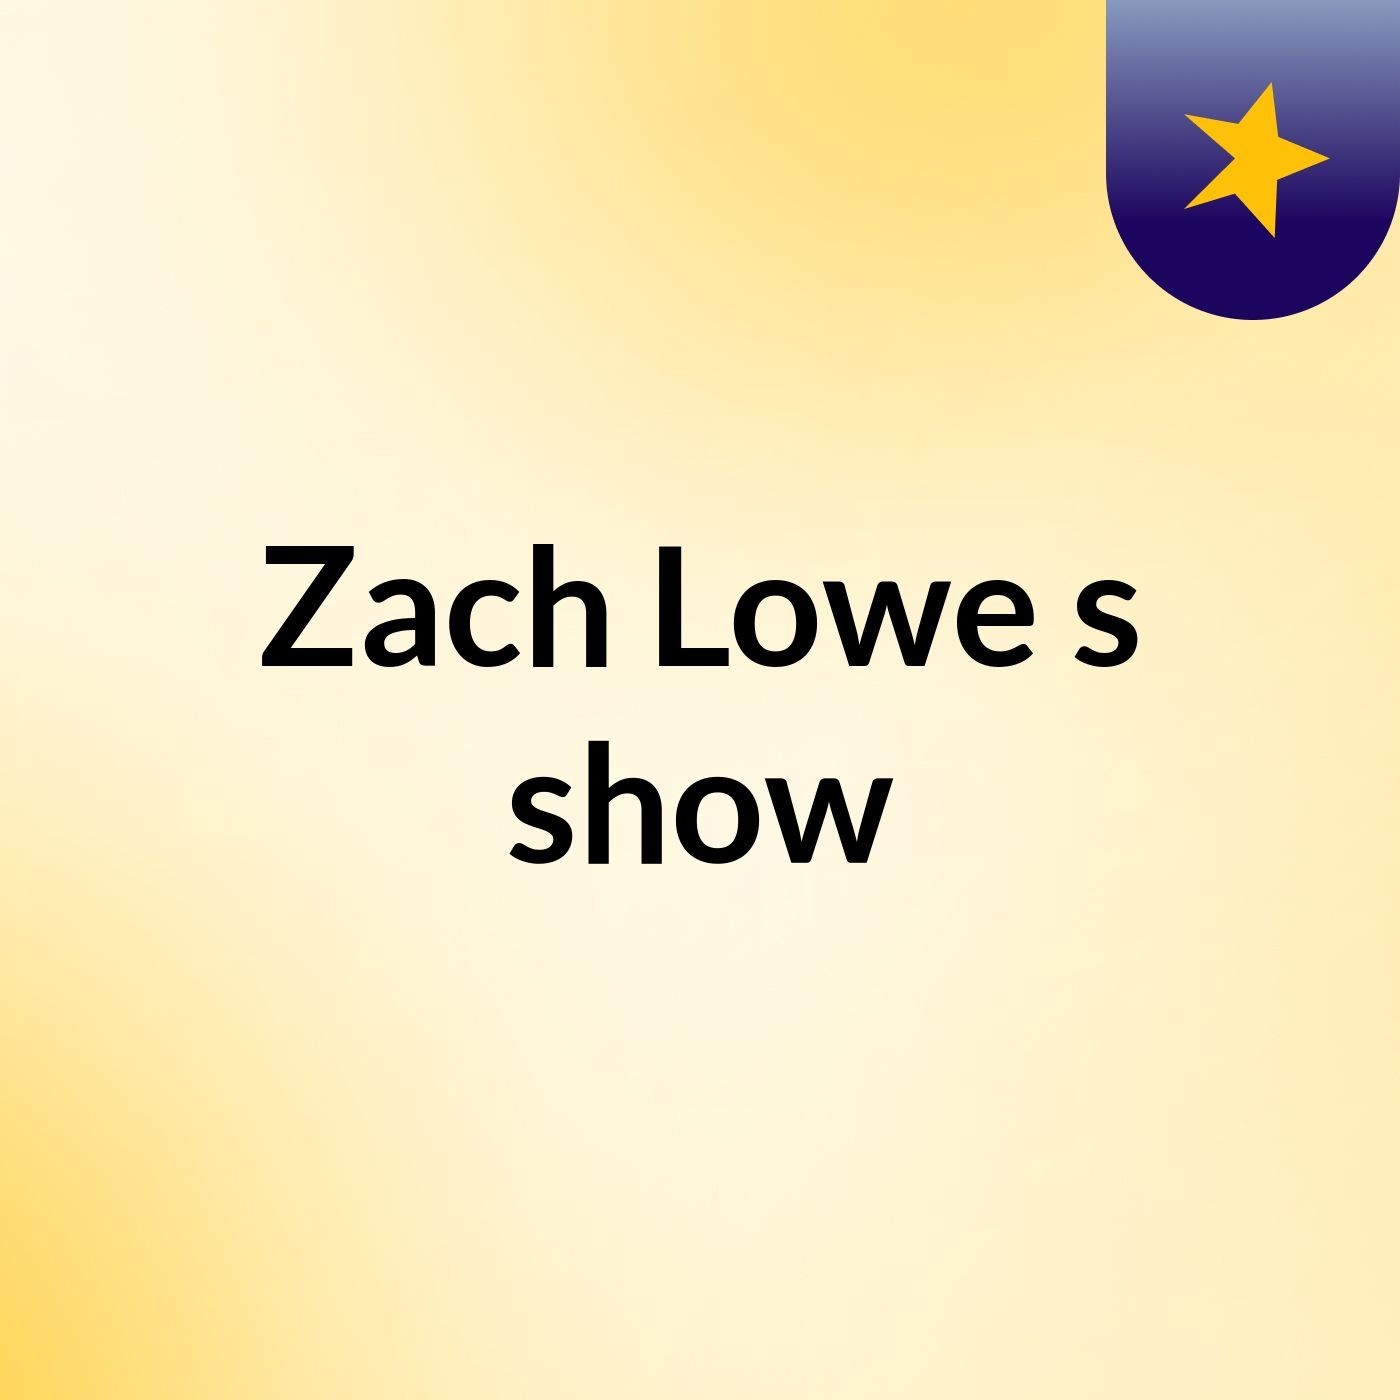 Zach Lowe's show